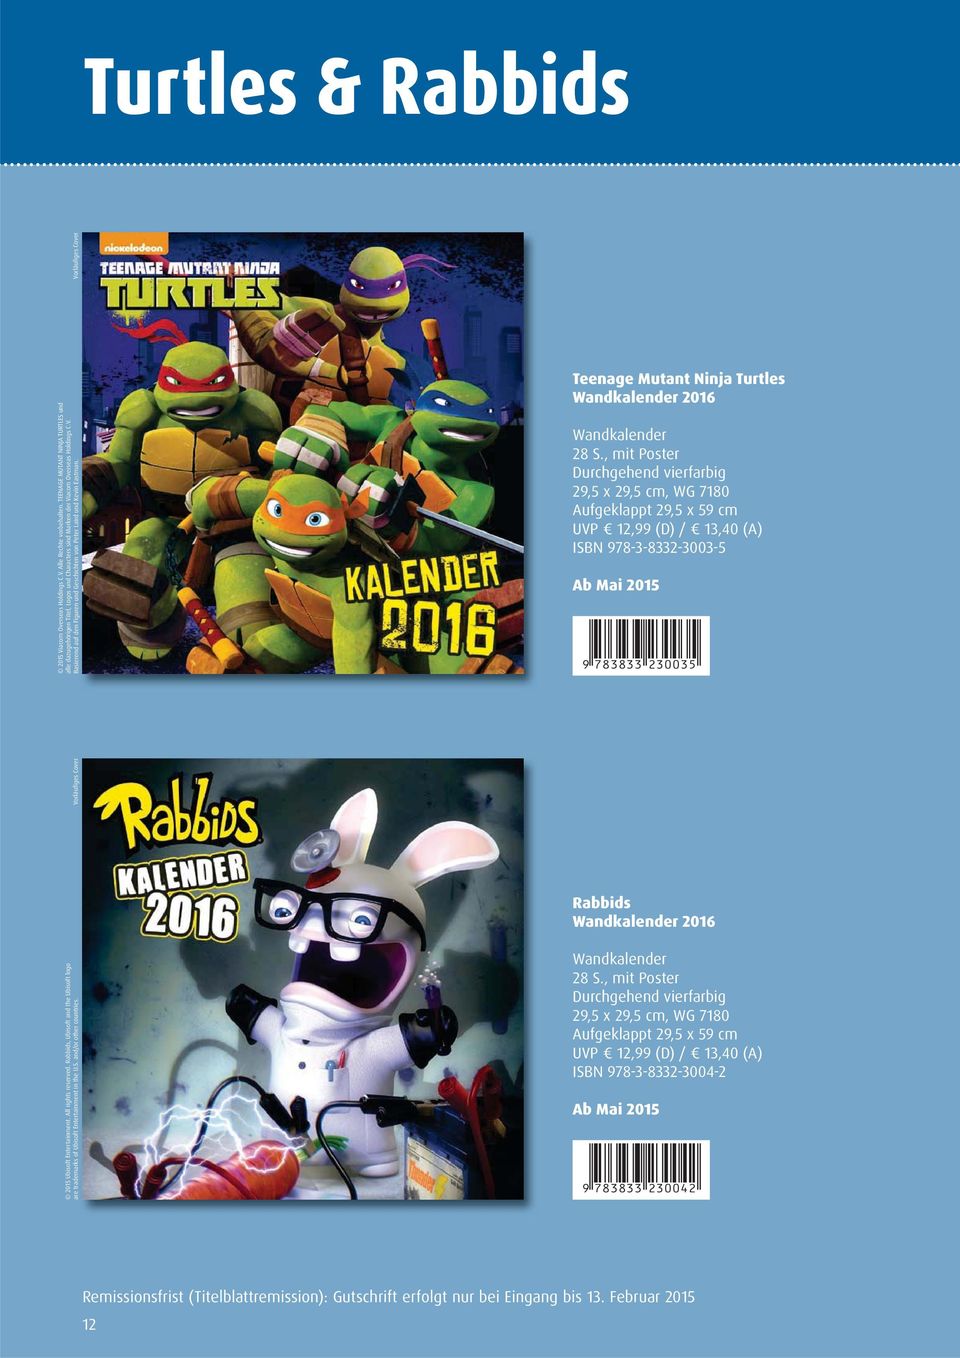 Teenage Mutant Ninja Turtles Wandkalender 26 Wandkalender 29,5 x 29,5 cm, WG 7180 ISBN 978-3-8332-3003-5 Ab Mai 25 9 783833 230035 Rabbids Wandkalender 26 25 Ubisoft Entertainment.